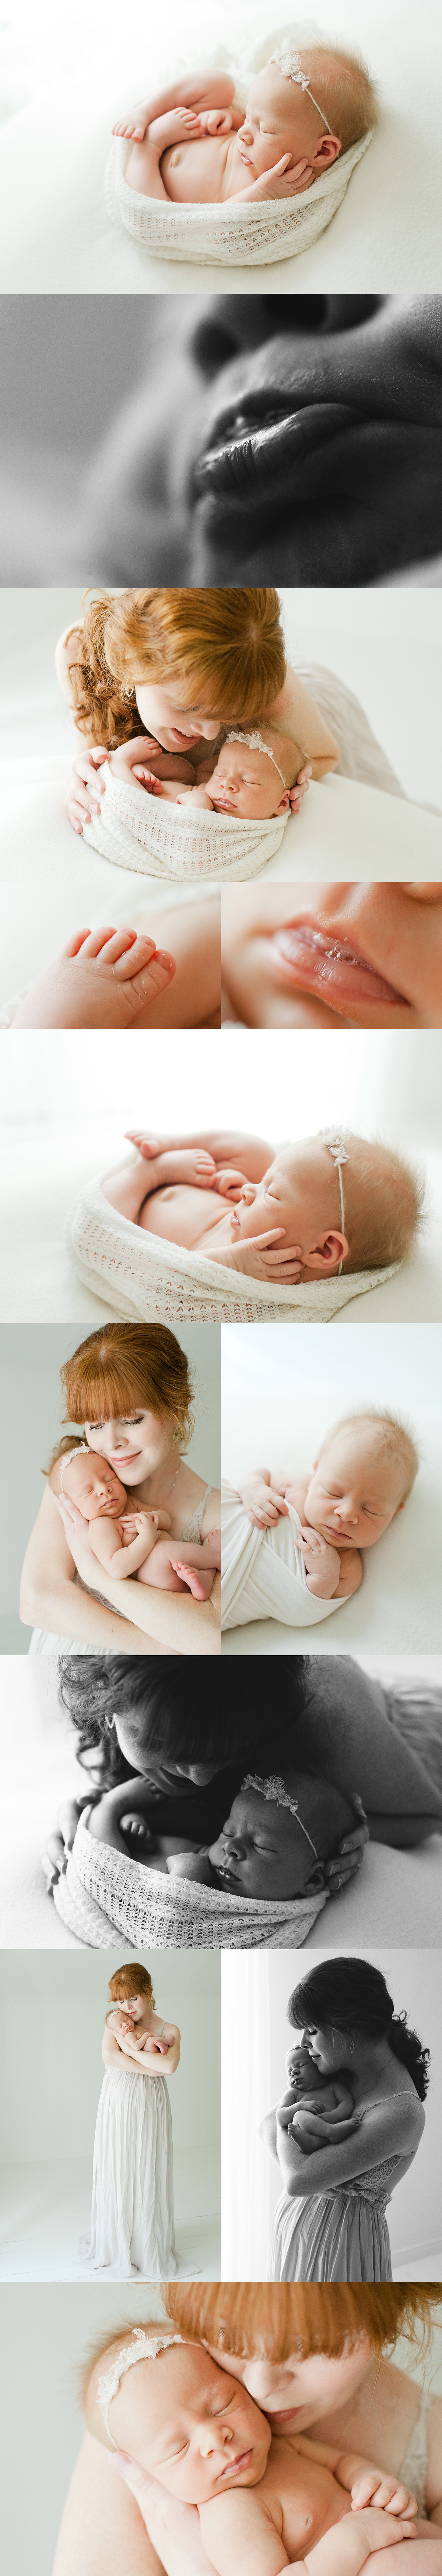 newborn baby girl pictures in studio